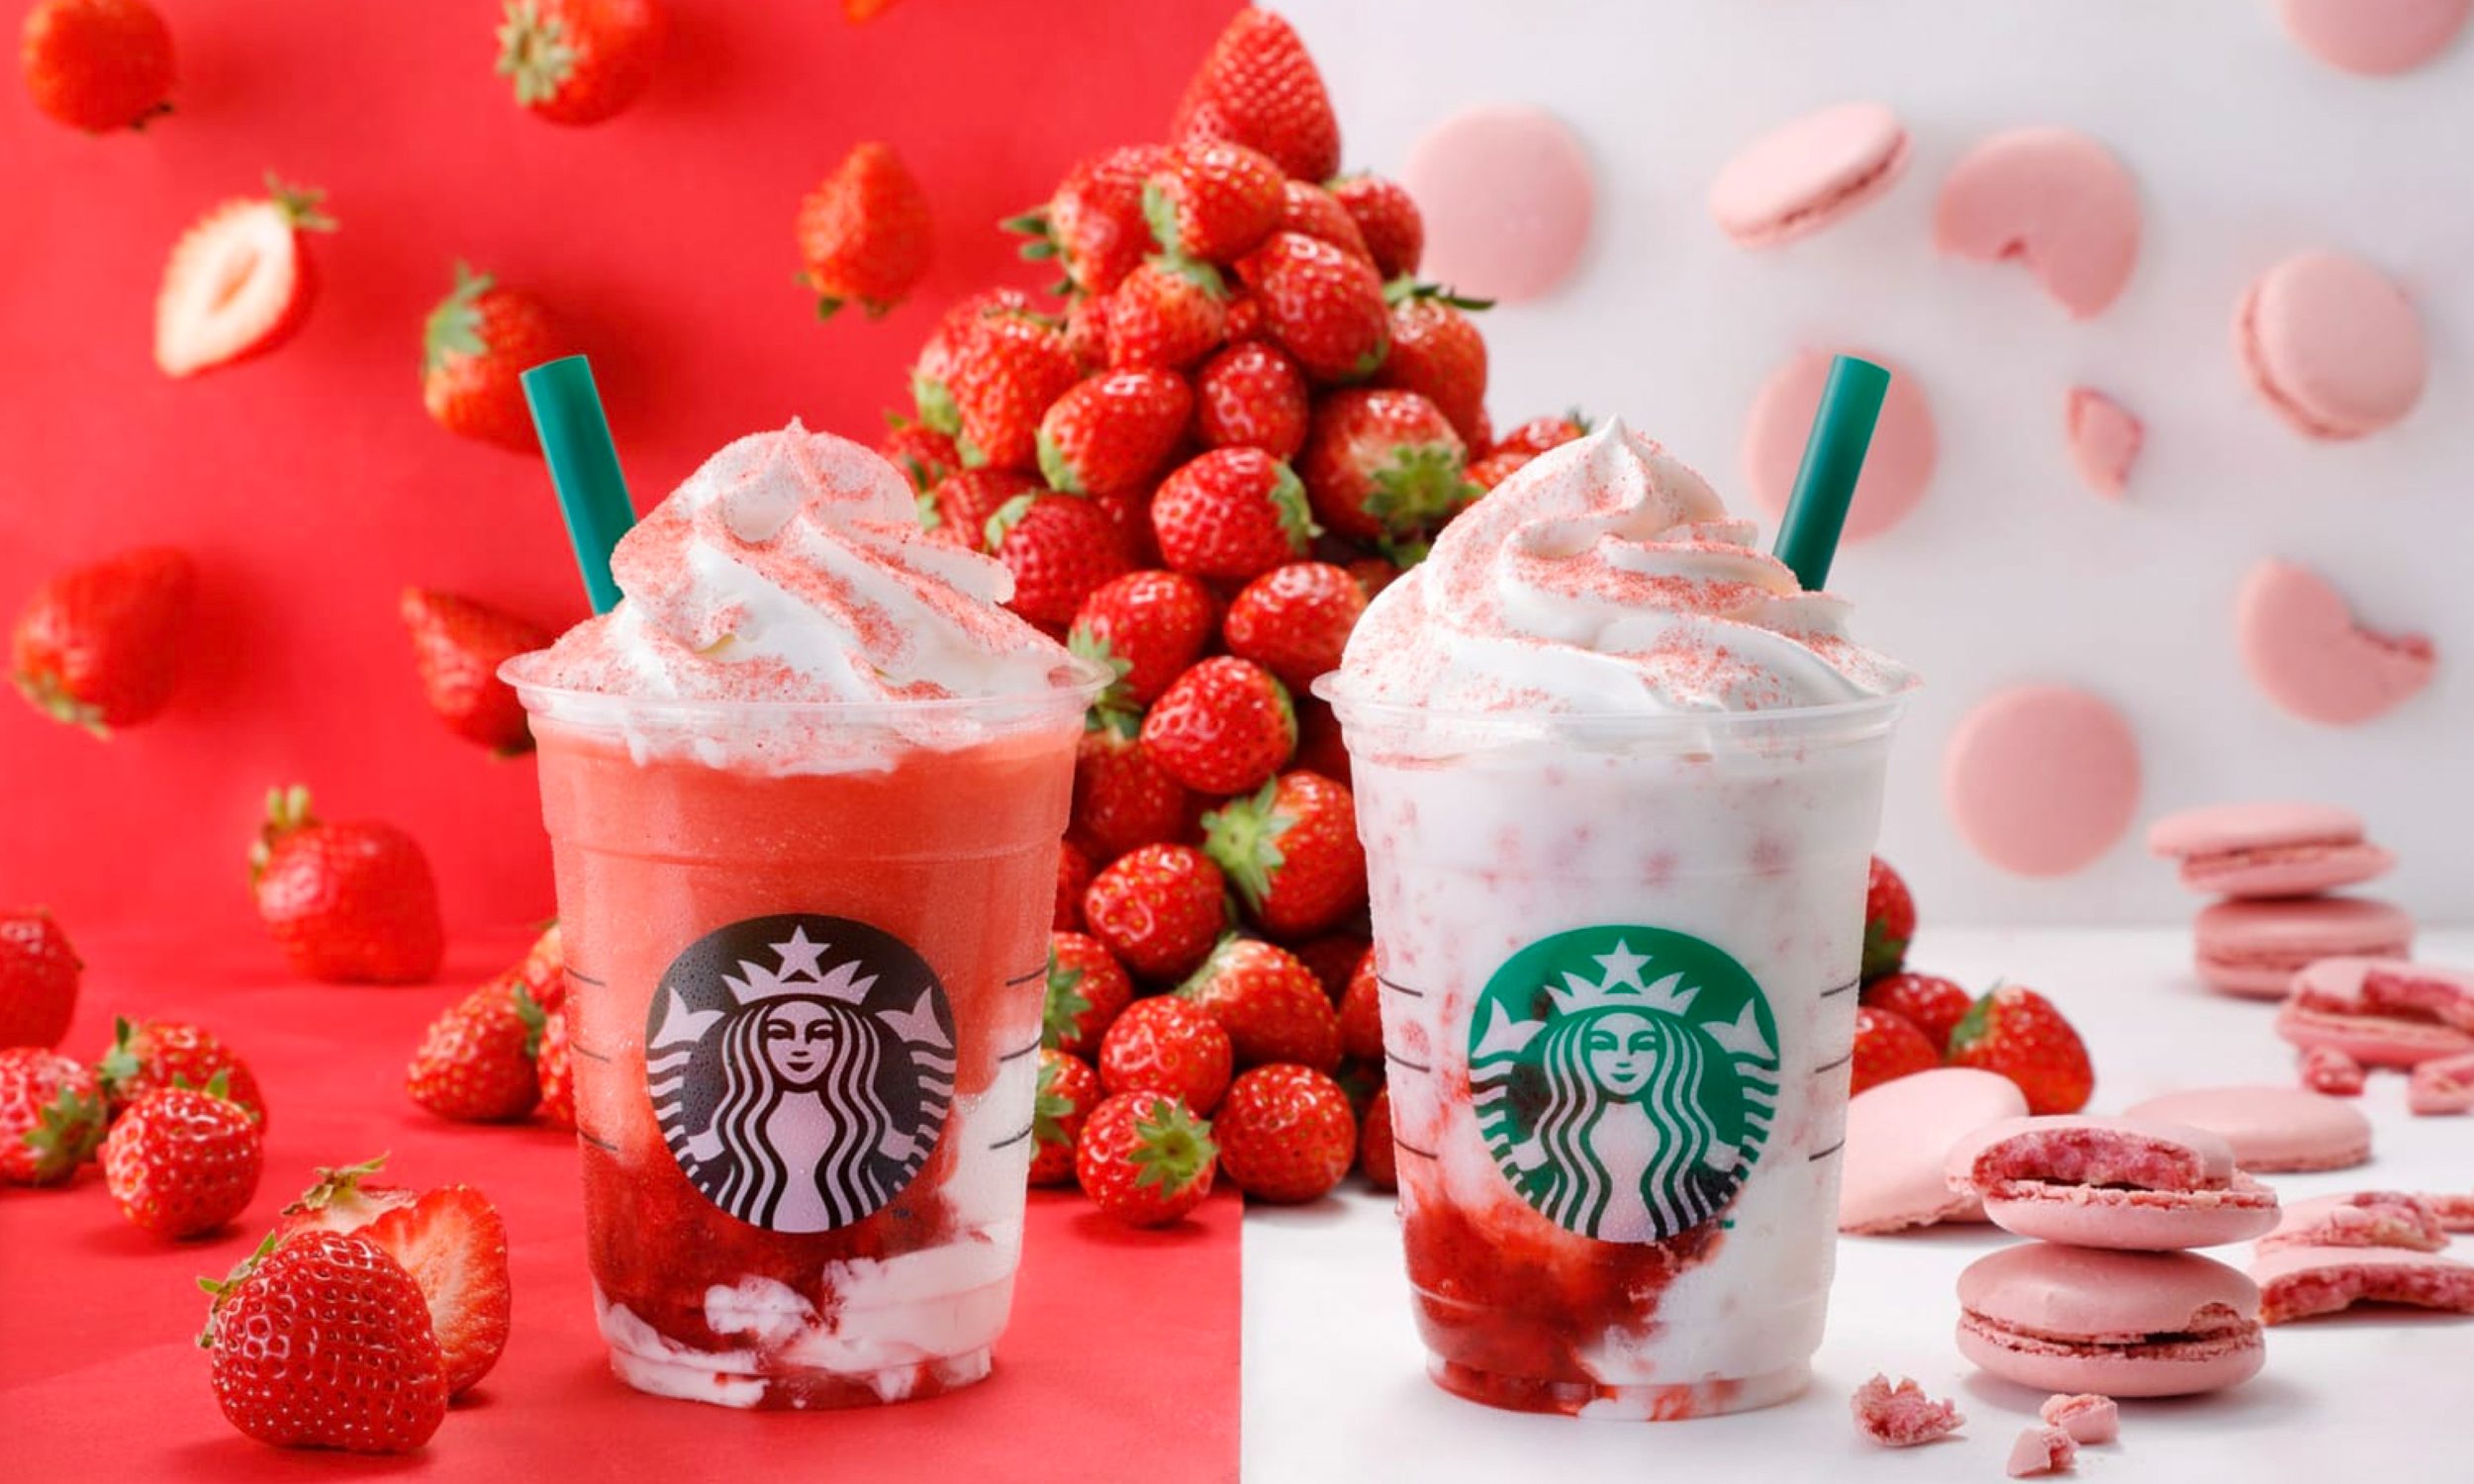 星巴克日本推出季节性 “红白” 限定草莓星冰乐